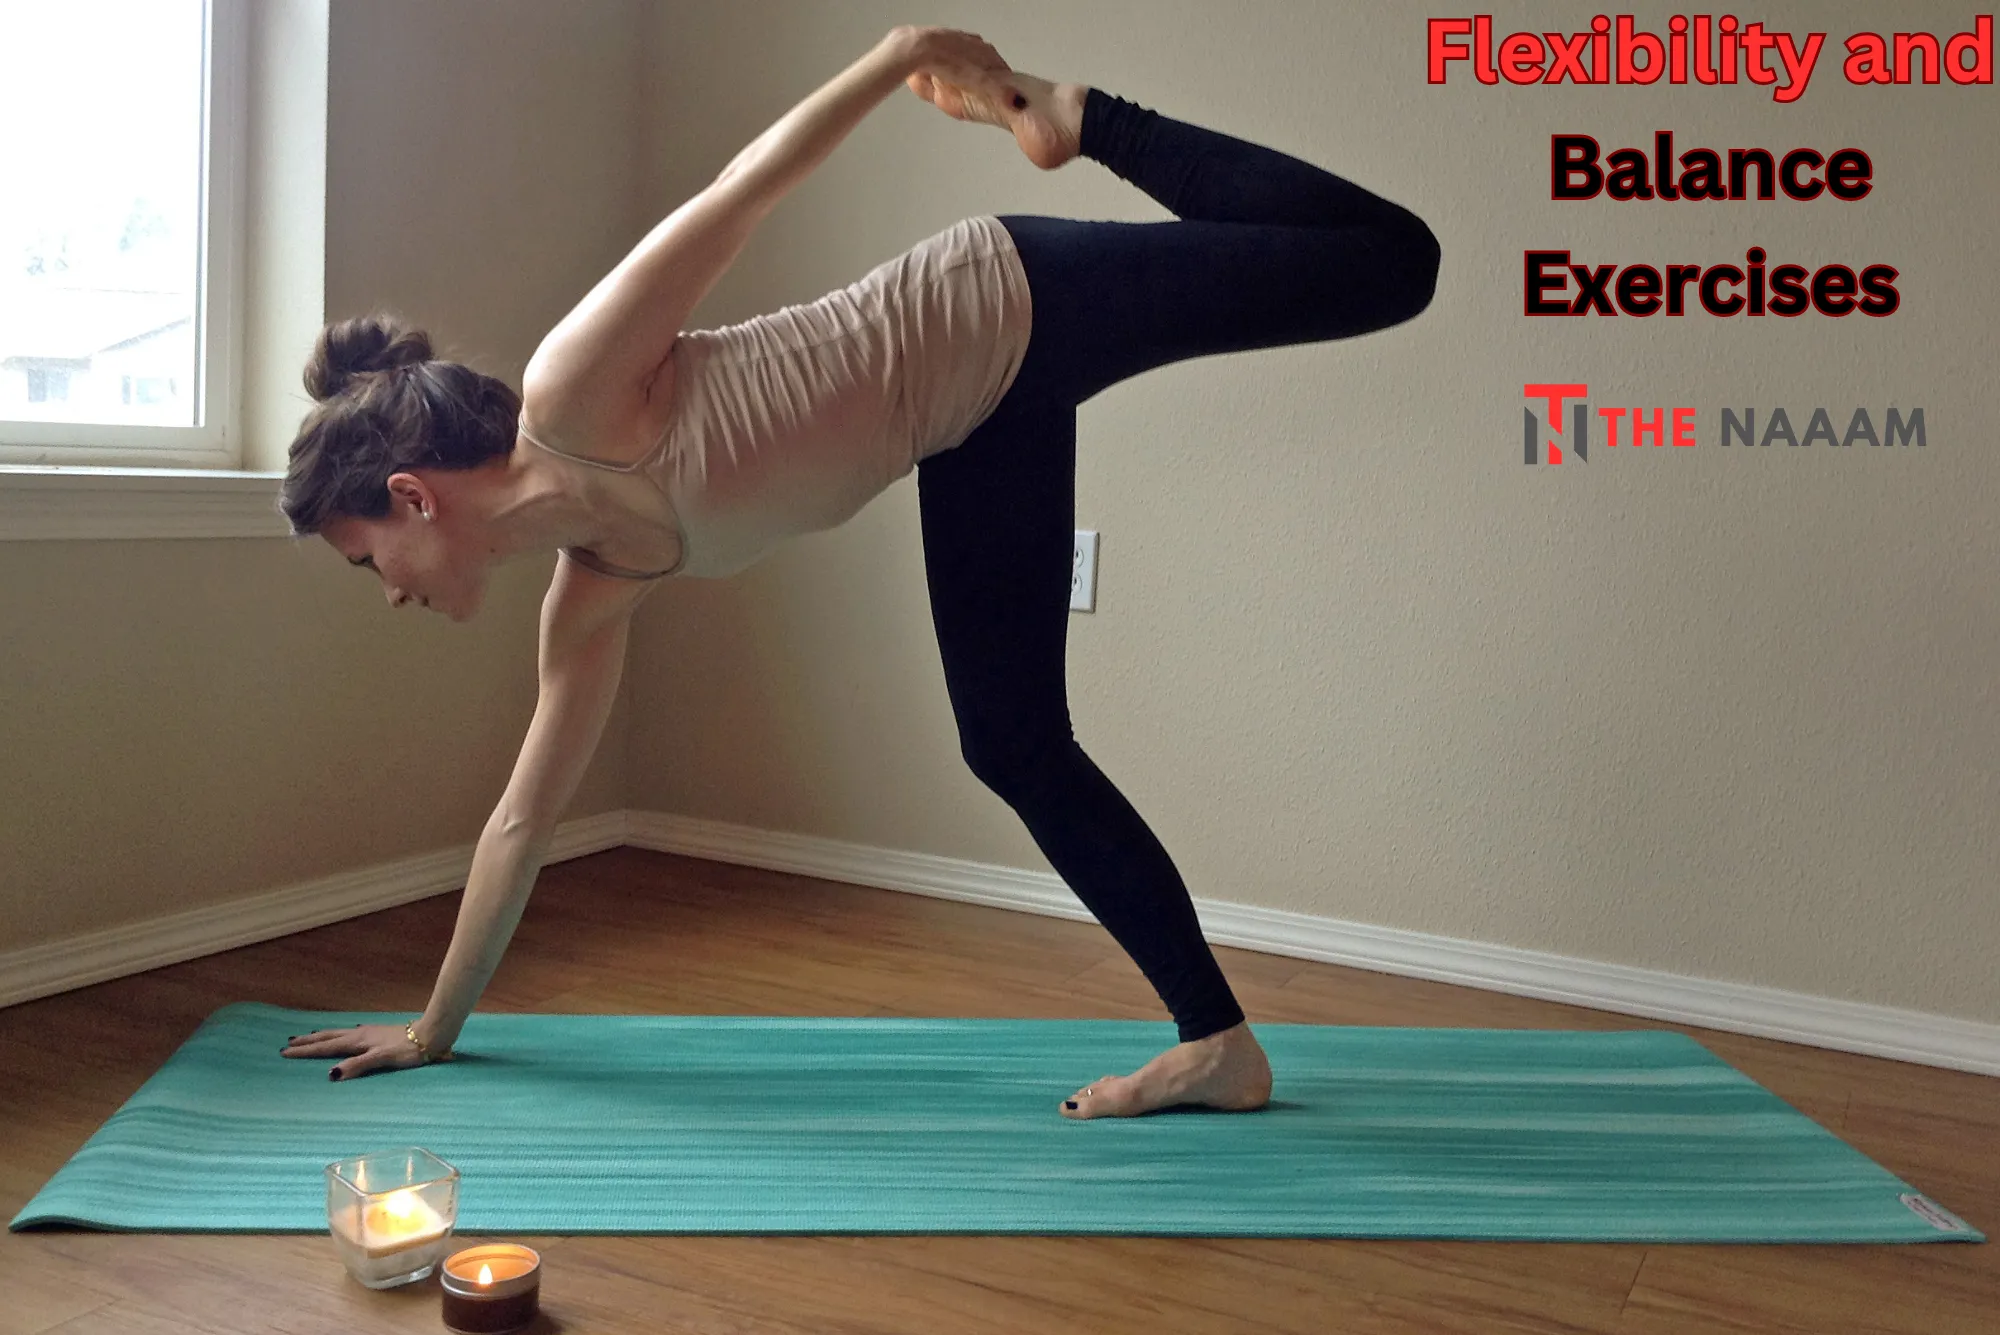 Flexibility and Balance Exercises